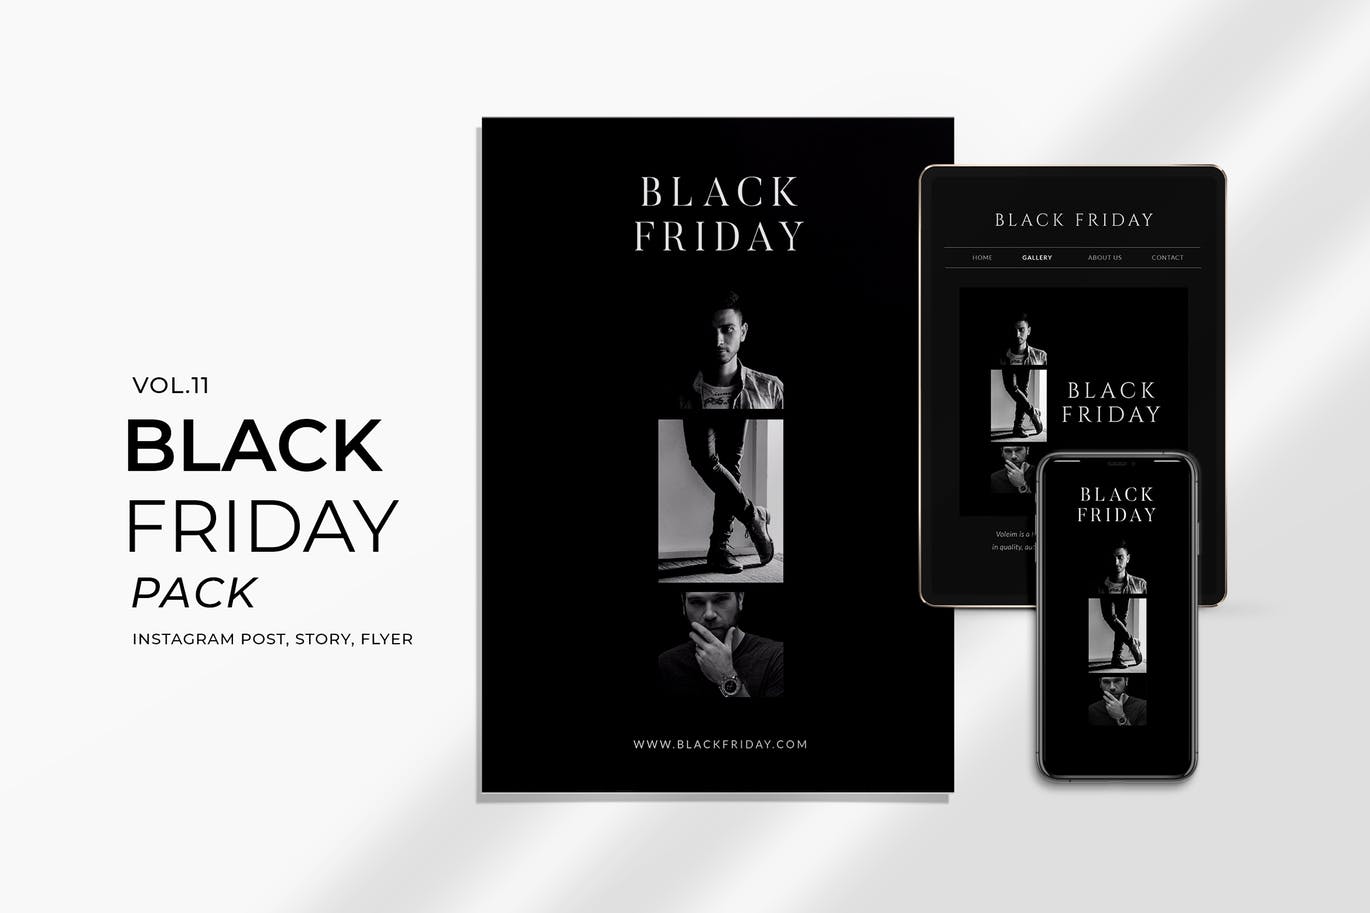 多尺寸黑色星期五促销活动宣传单设计模板v11 Black Friday Promotion Flyer and Instagram Vol. 11插图